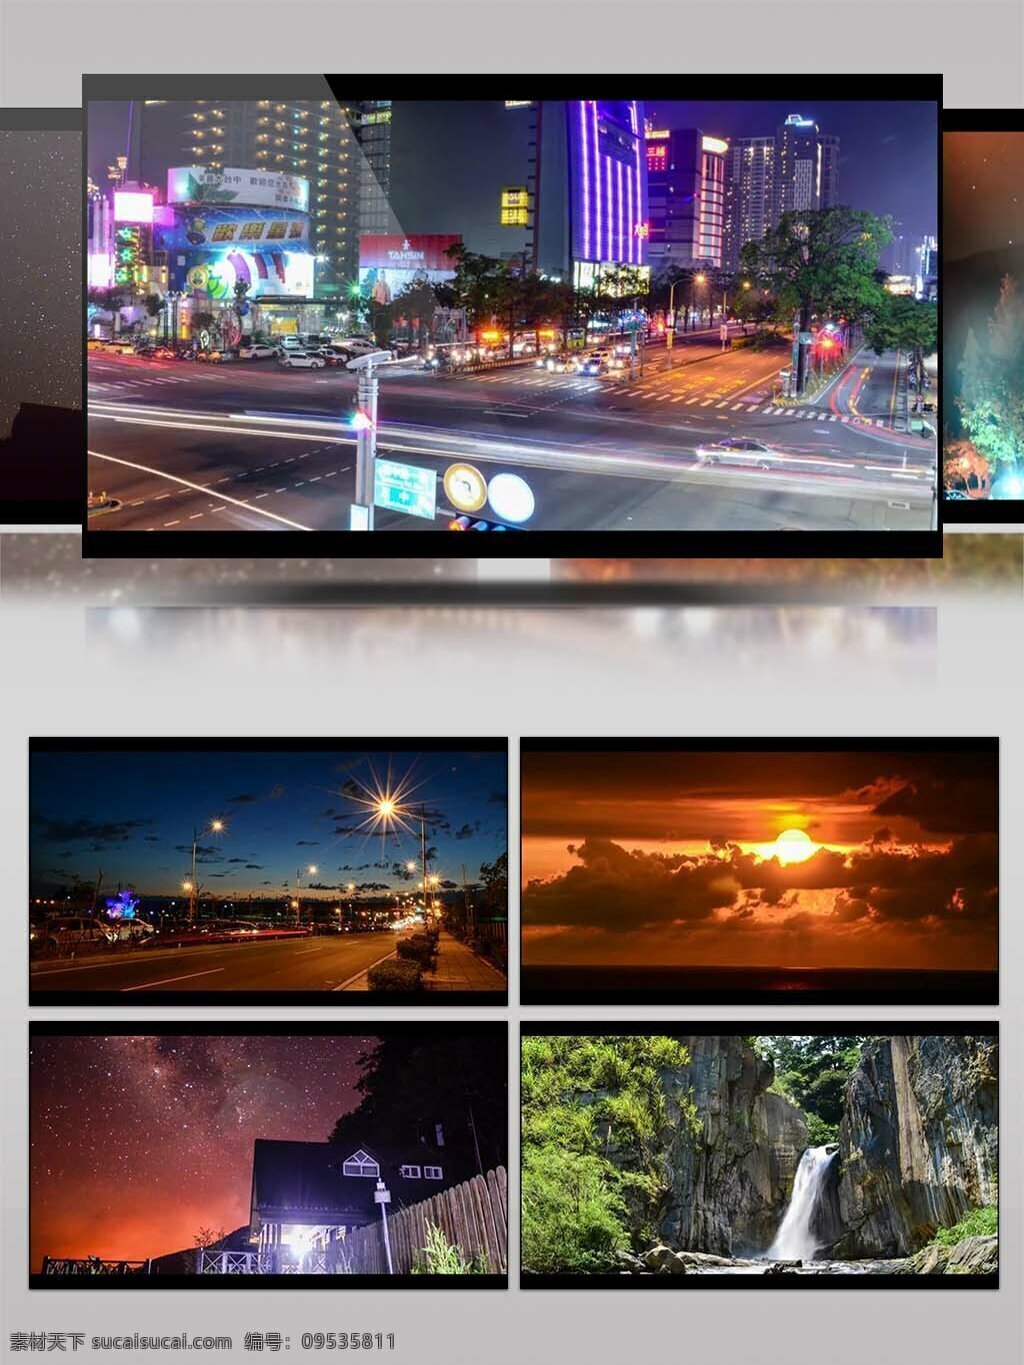 高清 延时 拍摄 台湾 宣传 视频 城市延时 城市夜晚 高清视频 建筑 街道 街景 台湾视频素材 台湾宣传 延时拍摄